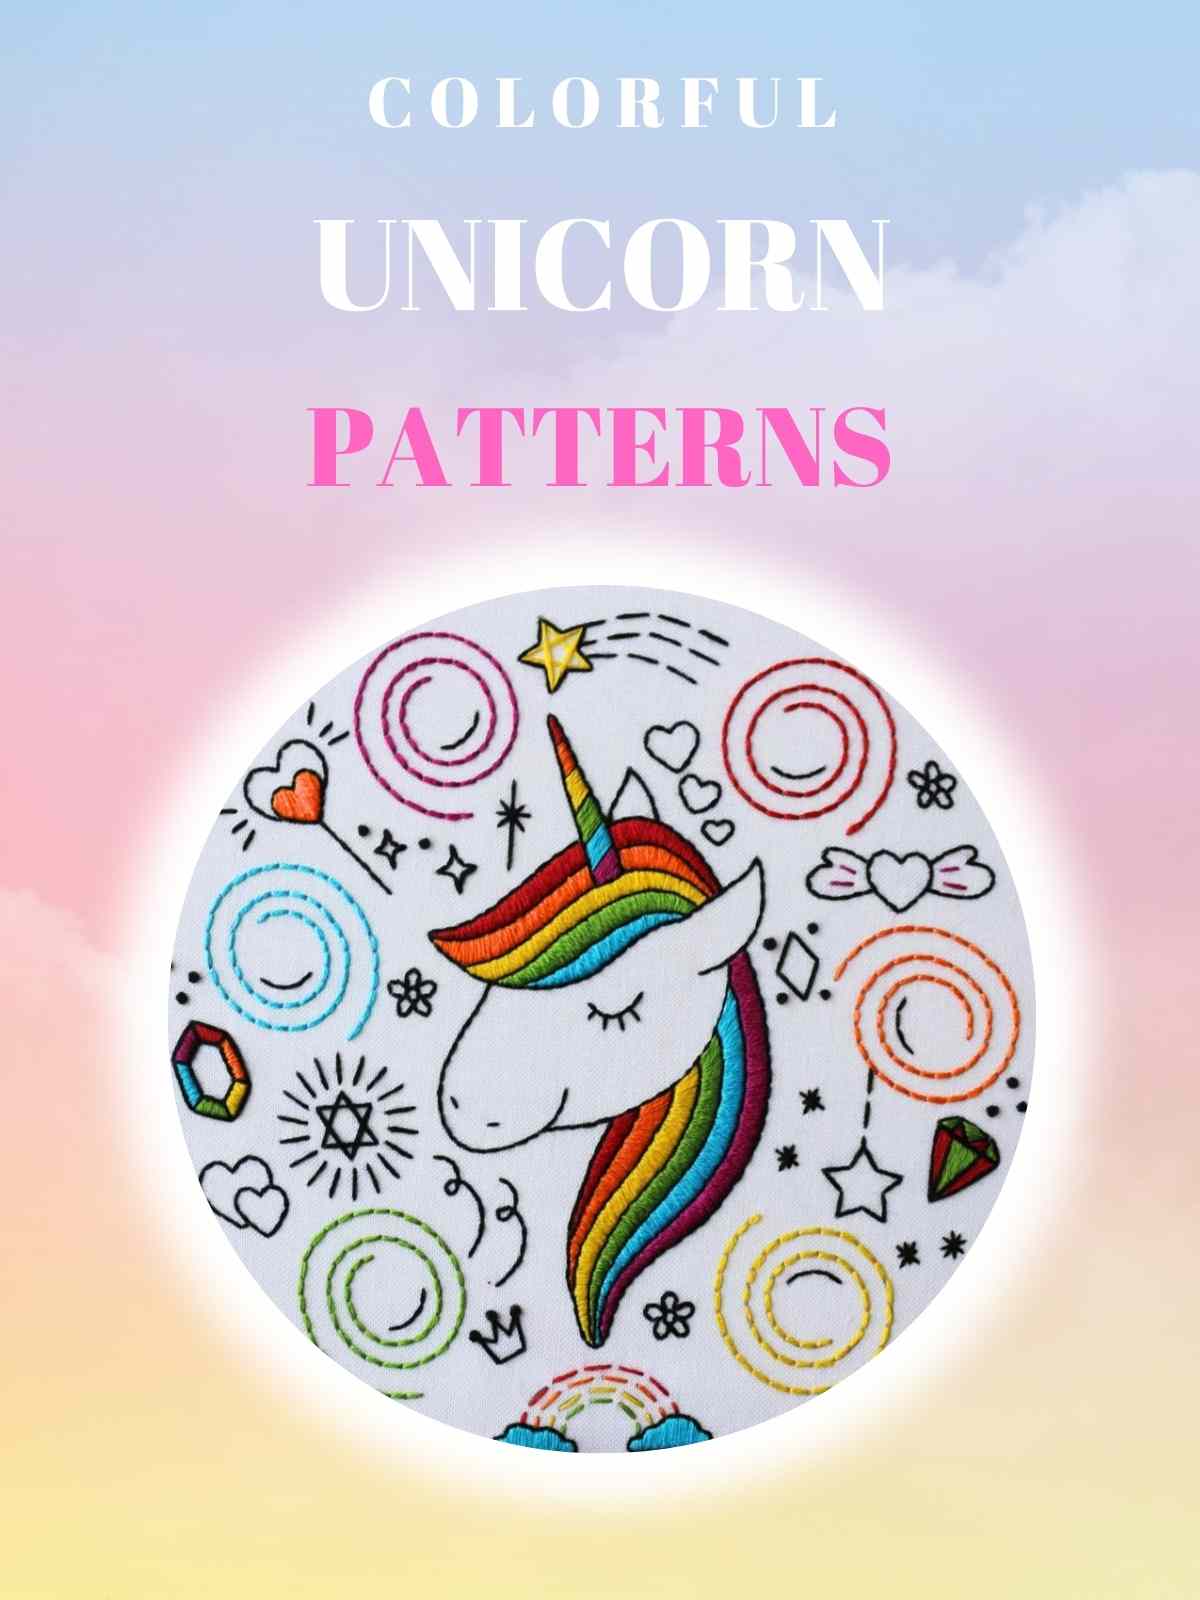 Cross-stitch patterns for unicorns